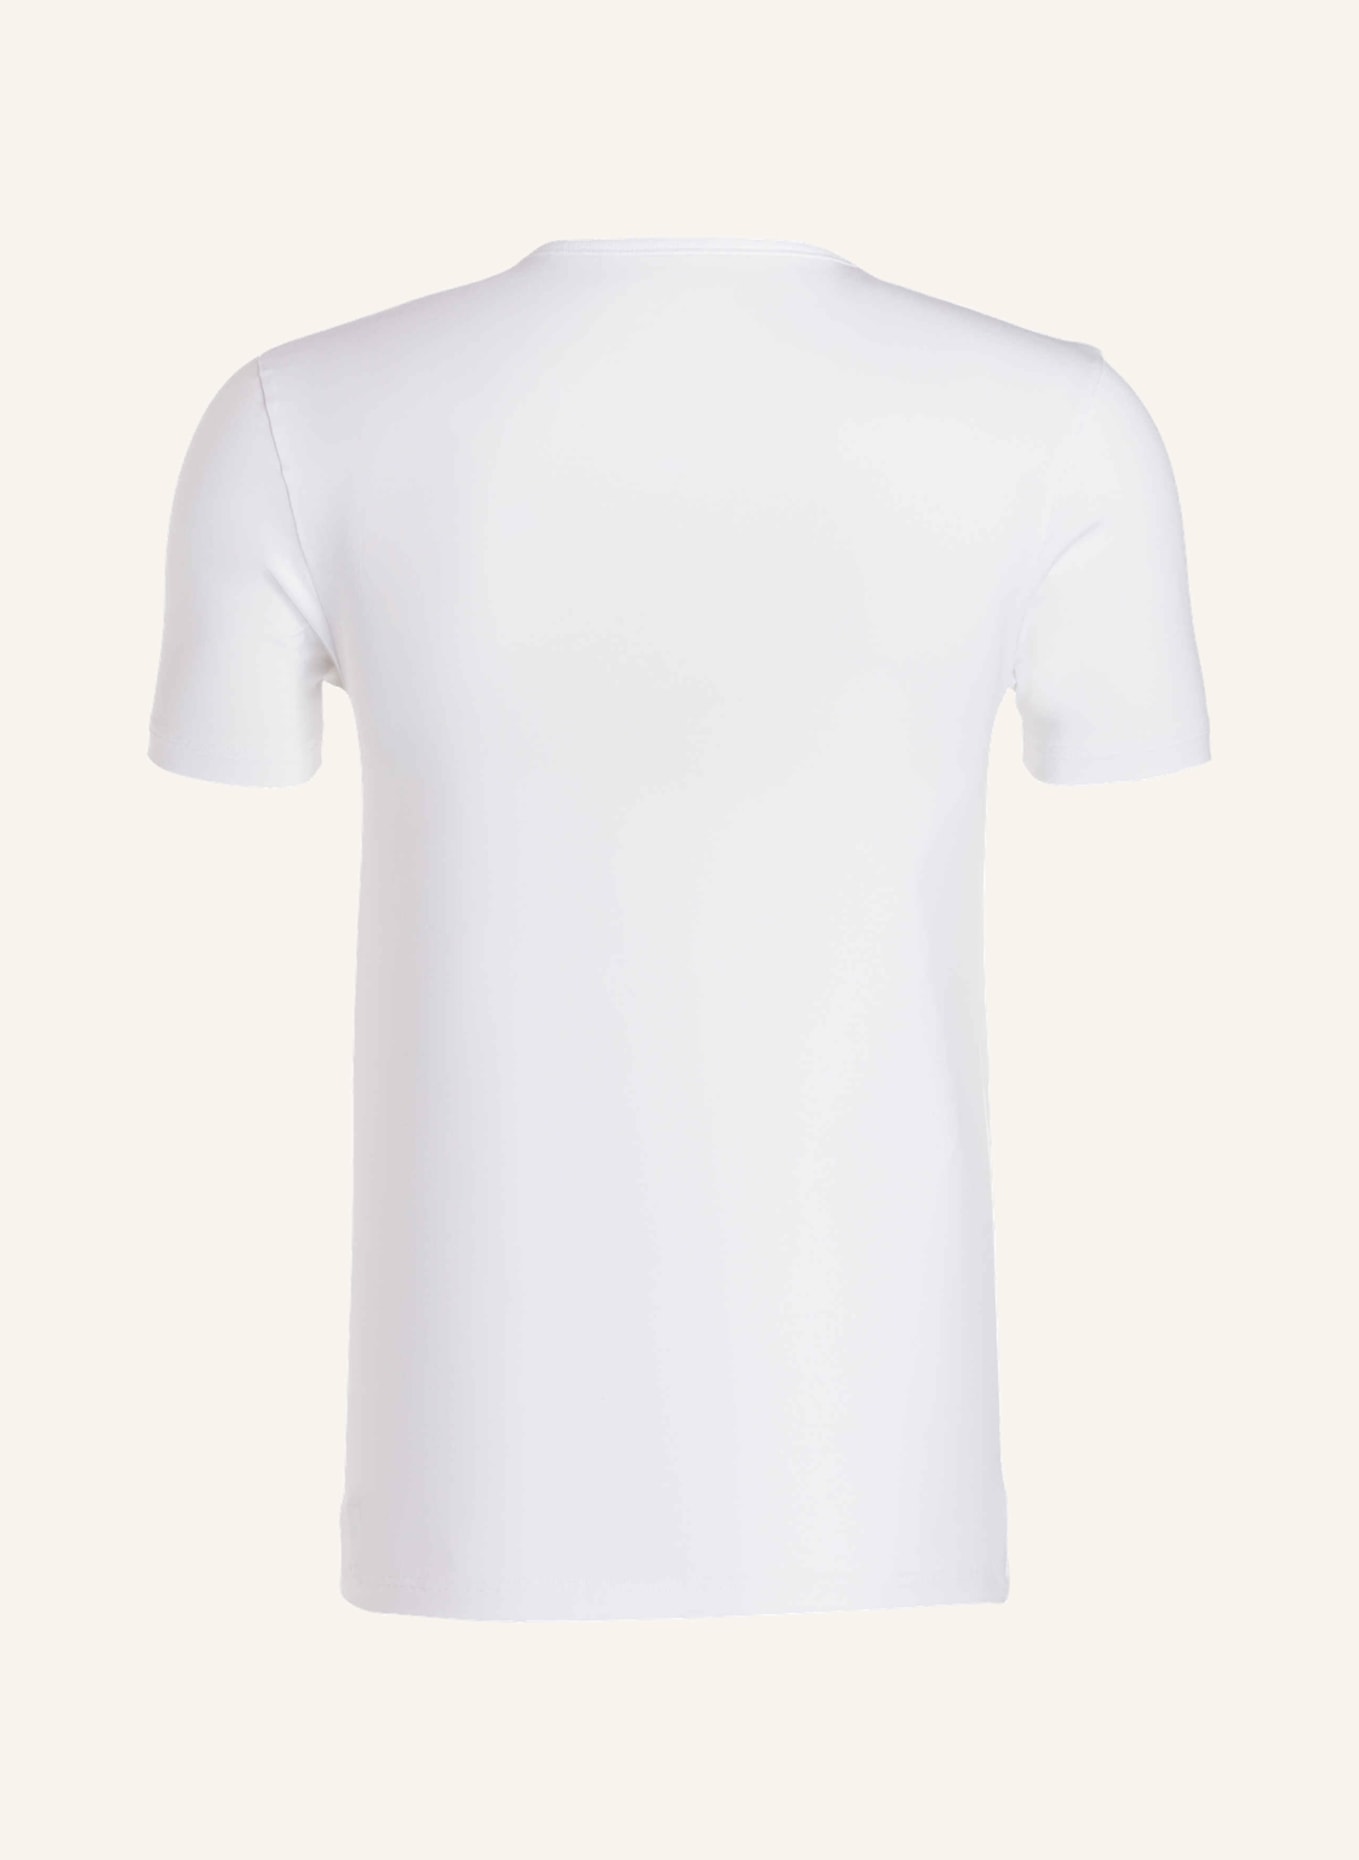 mey Pajama shirt series DRY COTTON, Color: WHITE (Image 2)